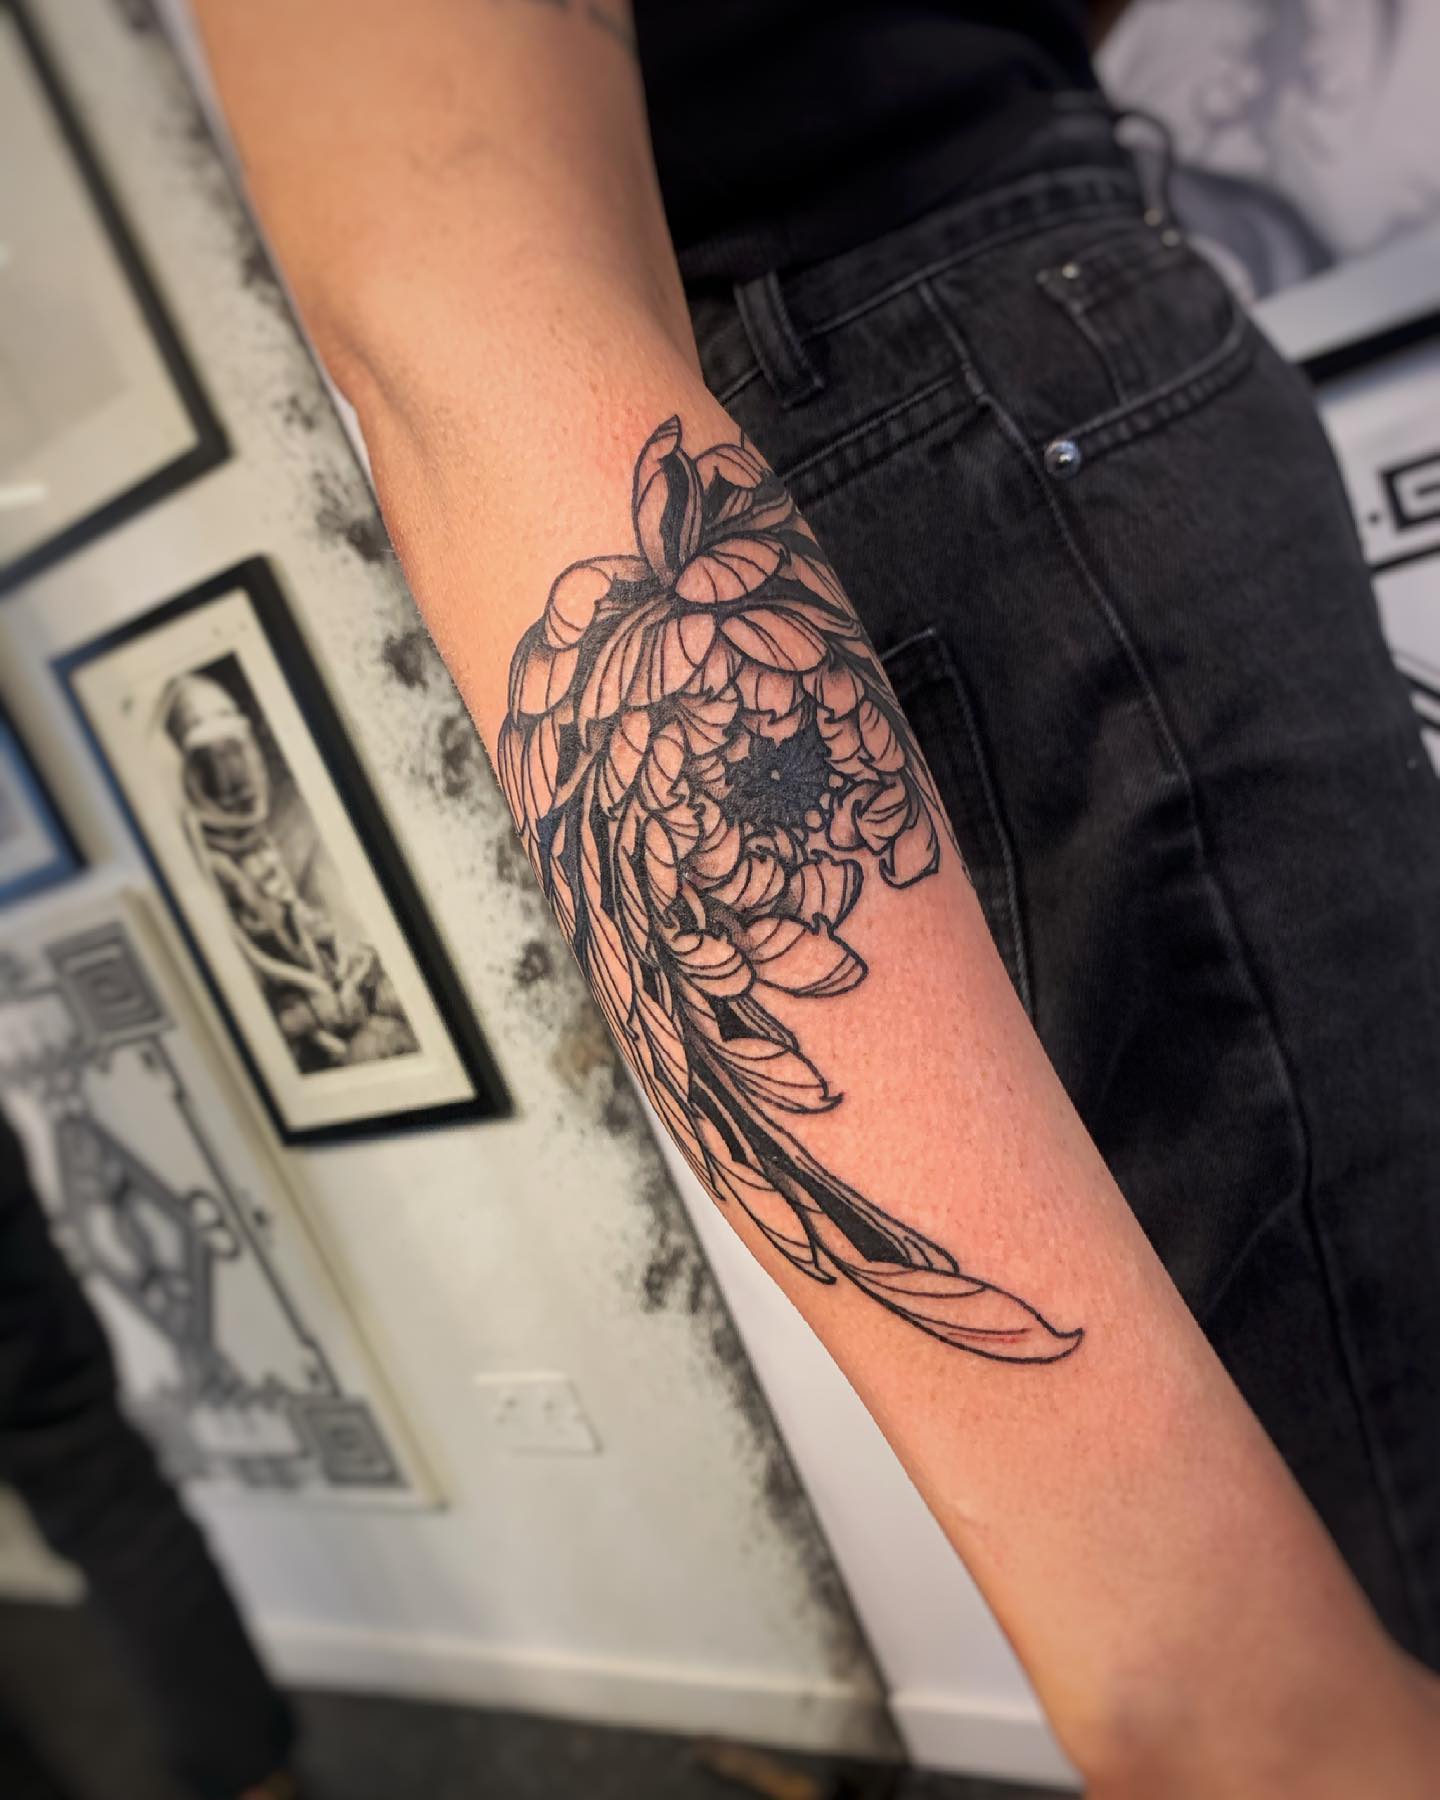 Japanisches Chrysanthemen-Tattoo auf dem Arm in Schwarz und Grau